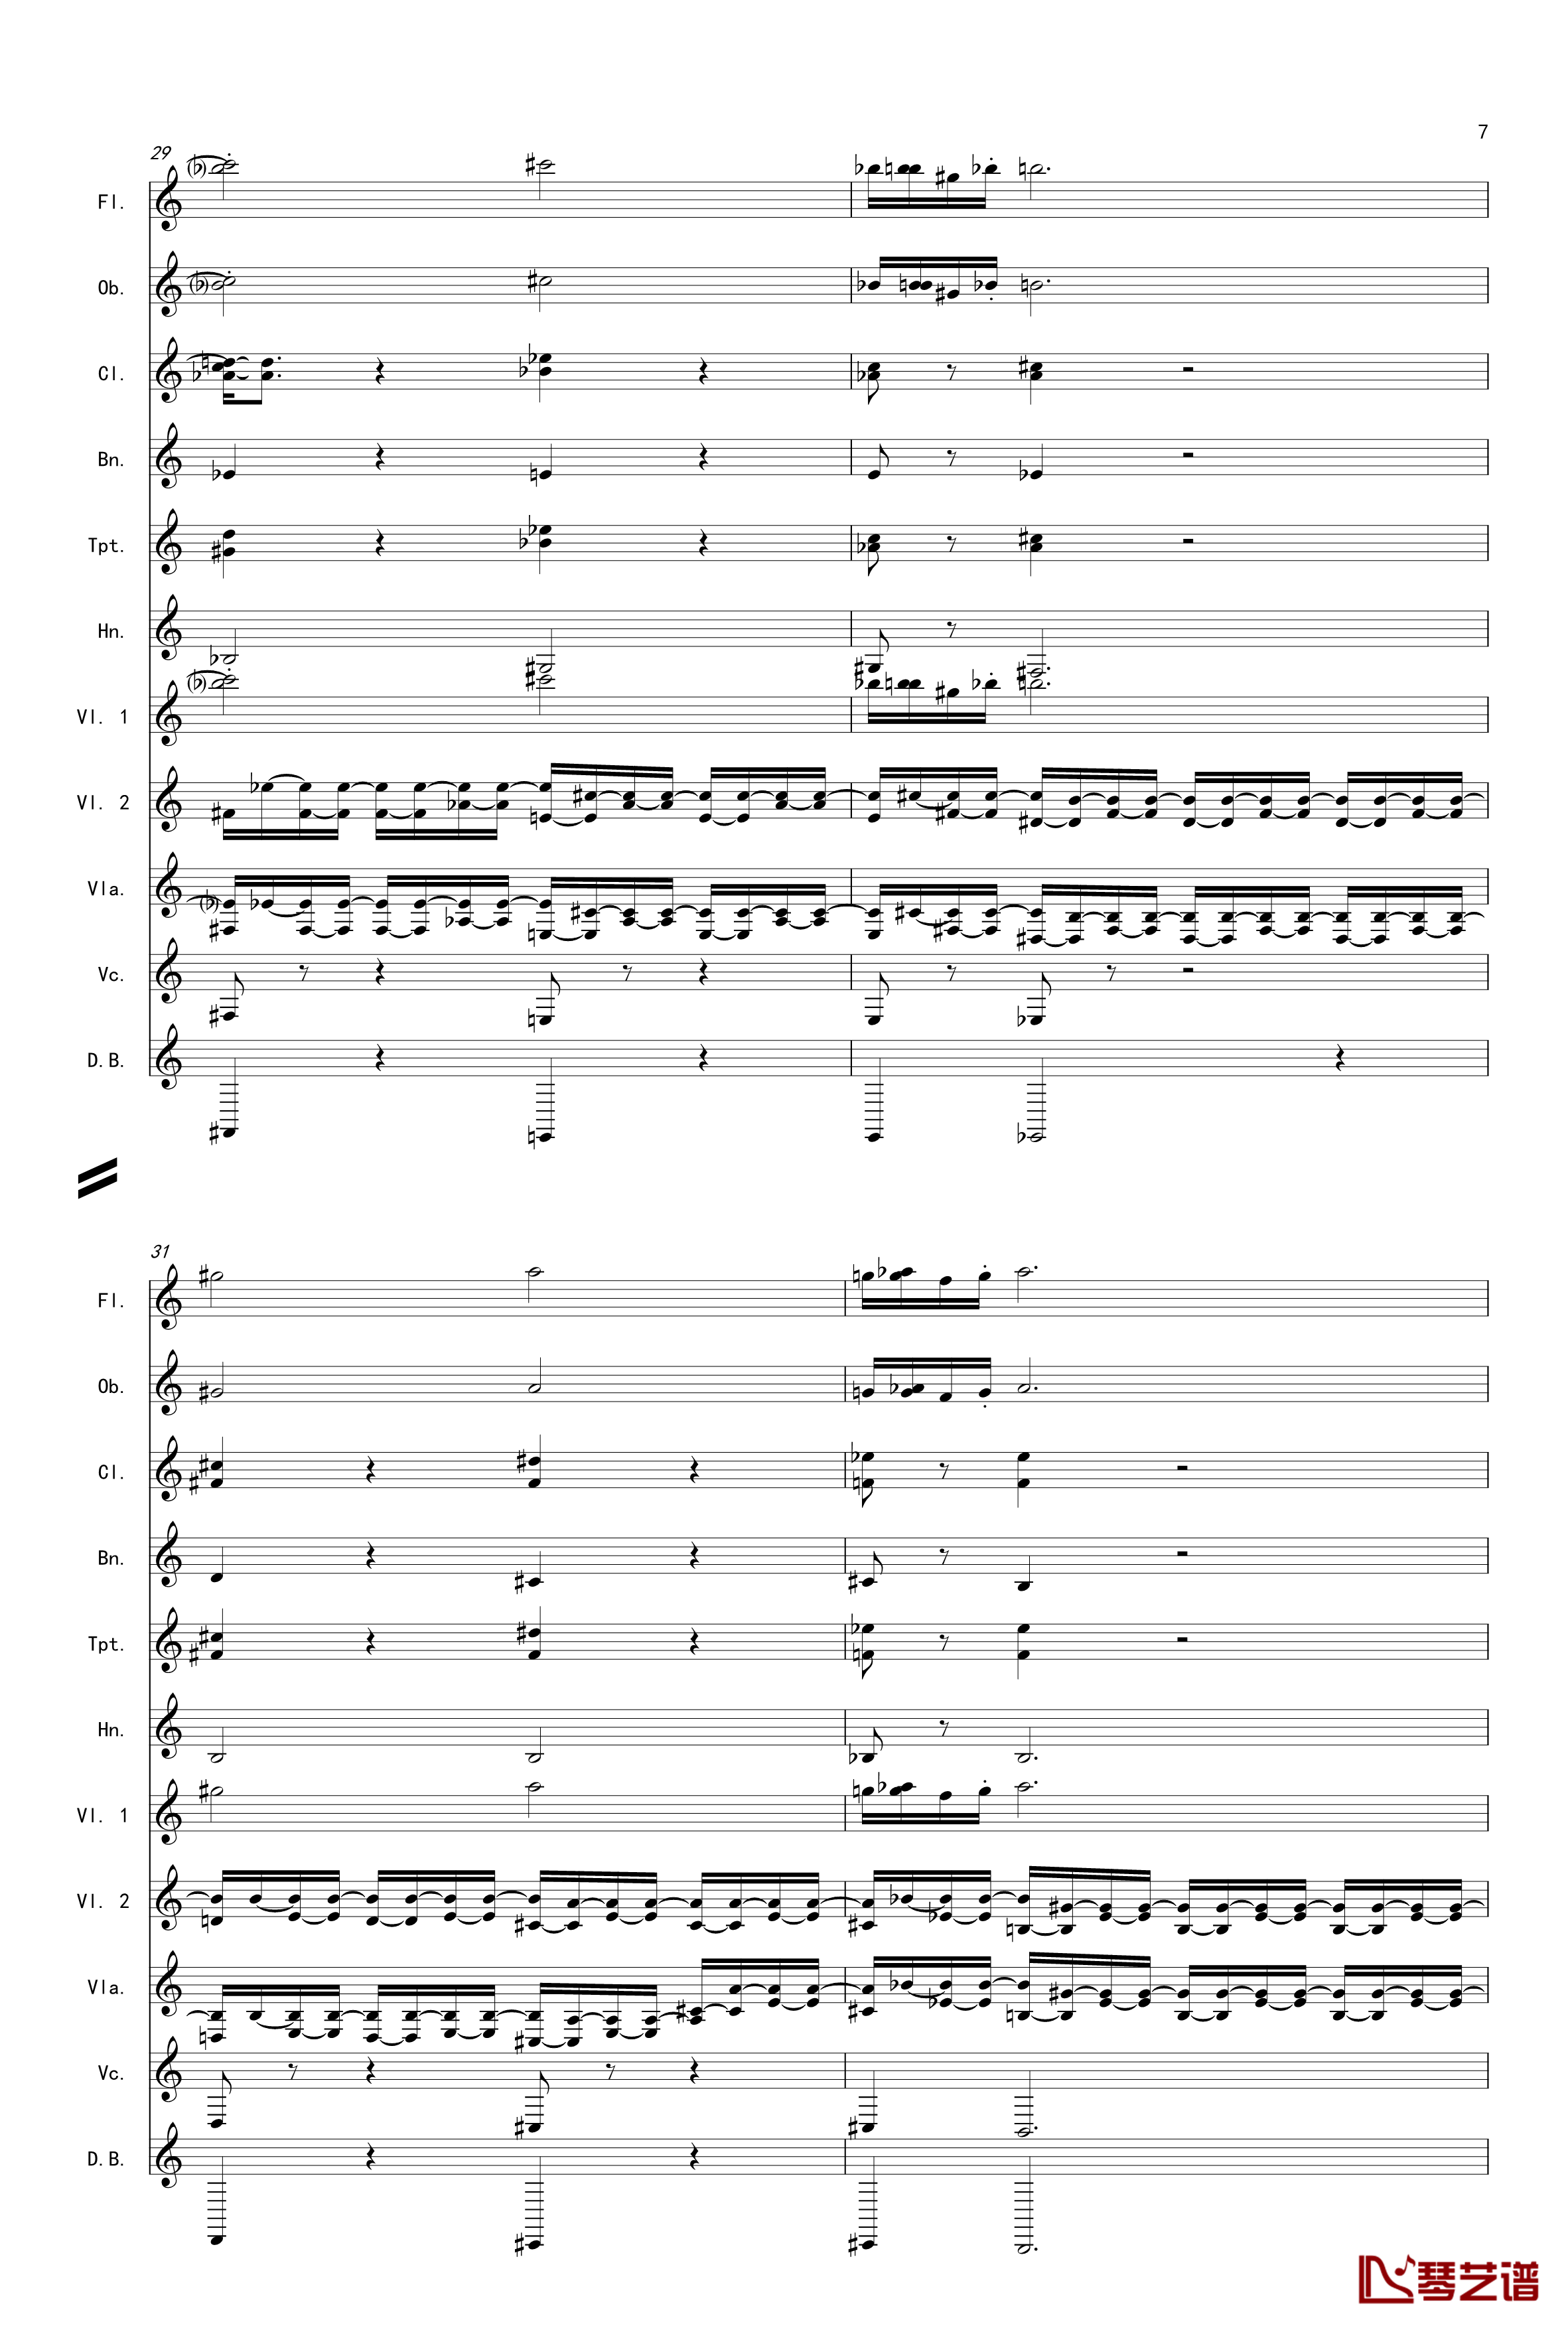 奏鸣曲之交响第14首Ⅲ钢琴谱-贝多芬-beethoven7